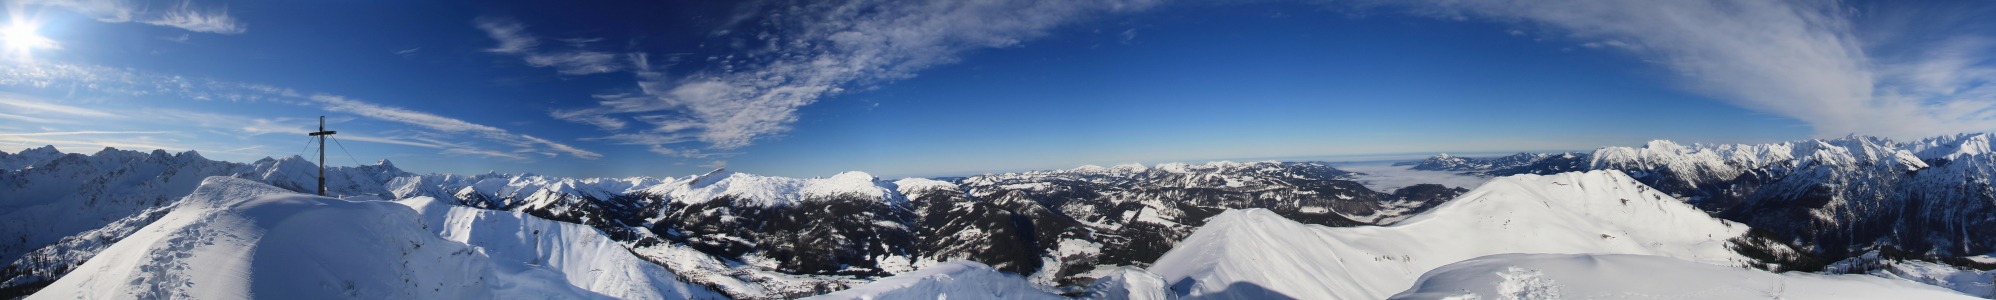 Bild-Nr: 10118164 Fellhorn Panorama Erstellt von: fotoping